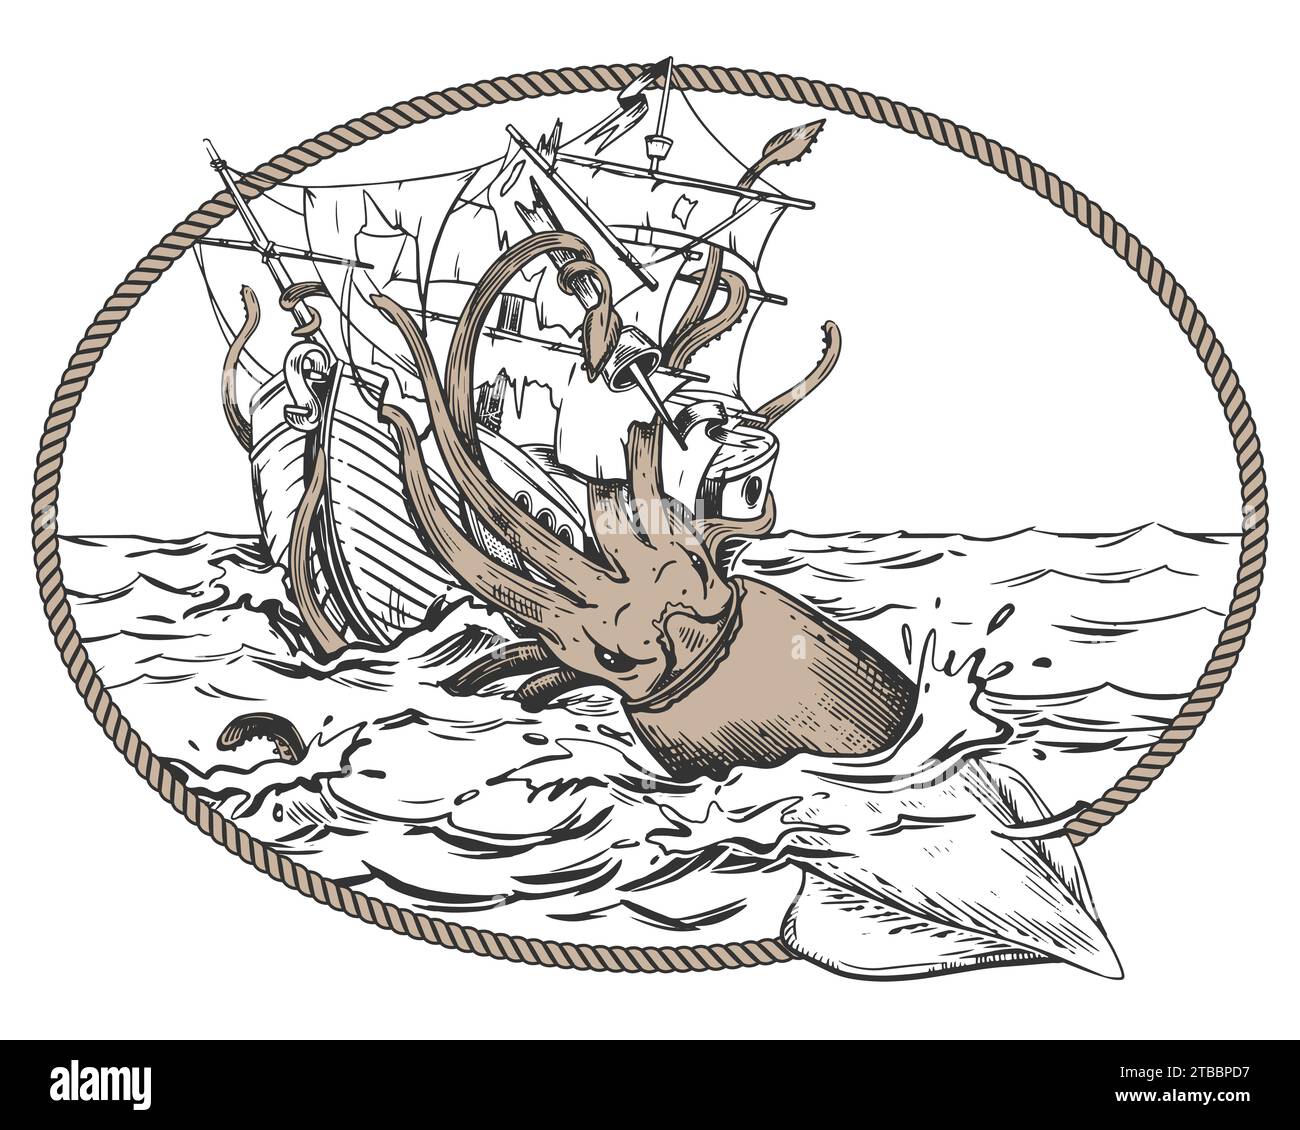 Le légendaire kraken attaque le vaisseau. Un calmar traîne un voilier sous l'eau. Dessin monochrome dans un cadre de corde ovale. Illustration vectorielle dans engr Illustration de Vecteur